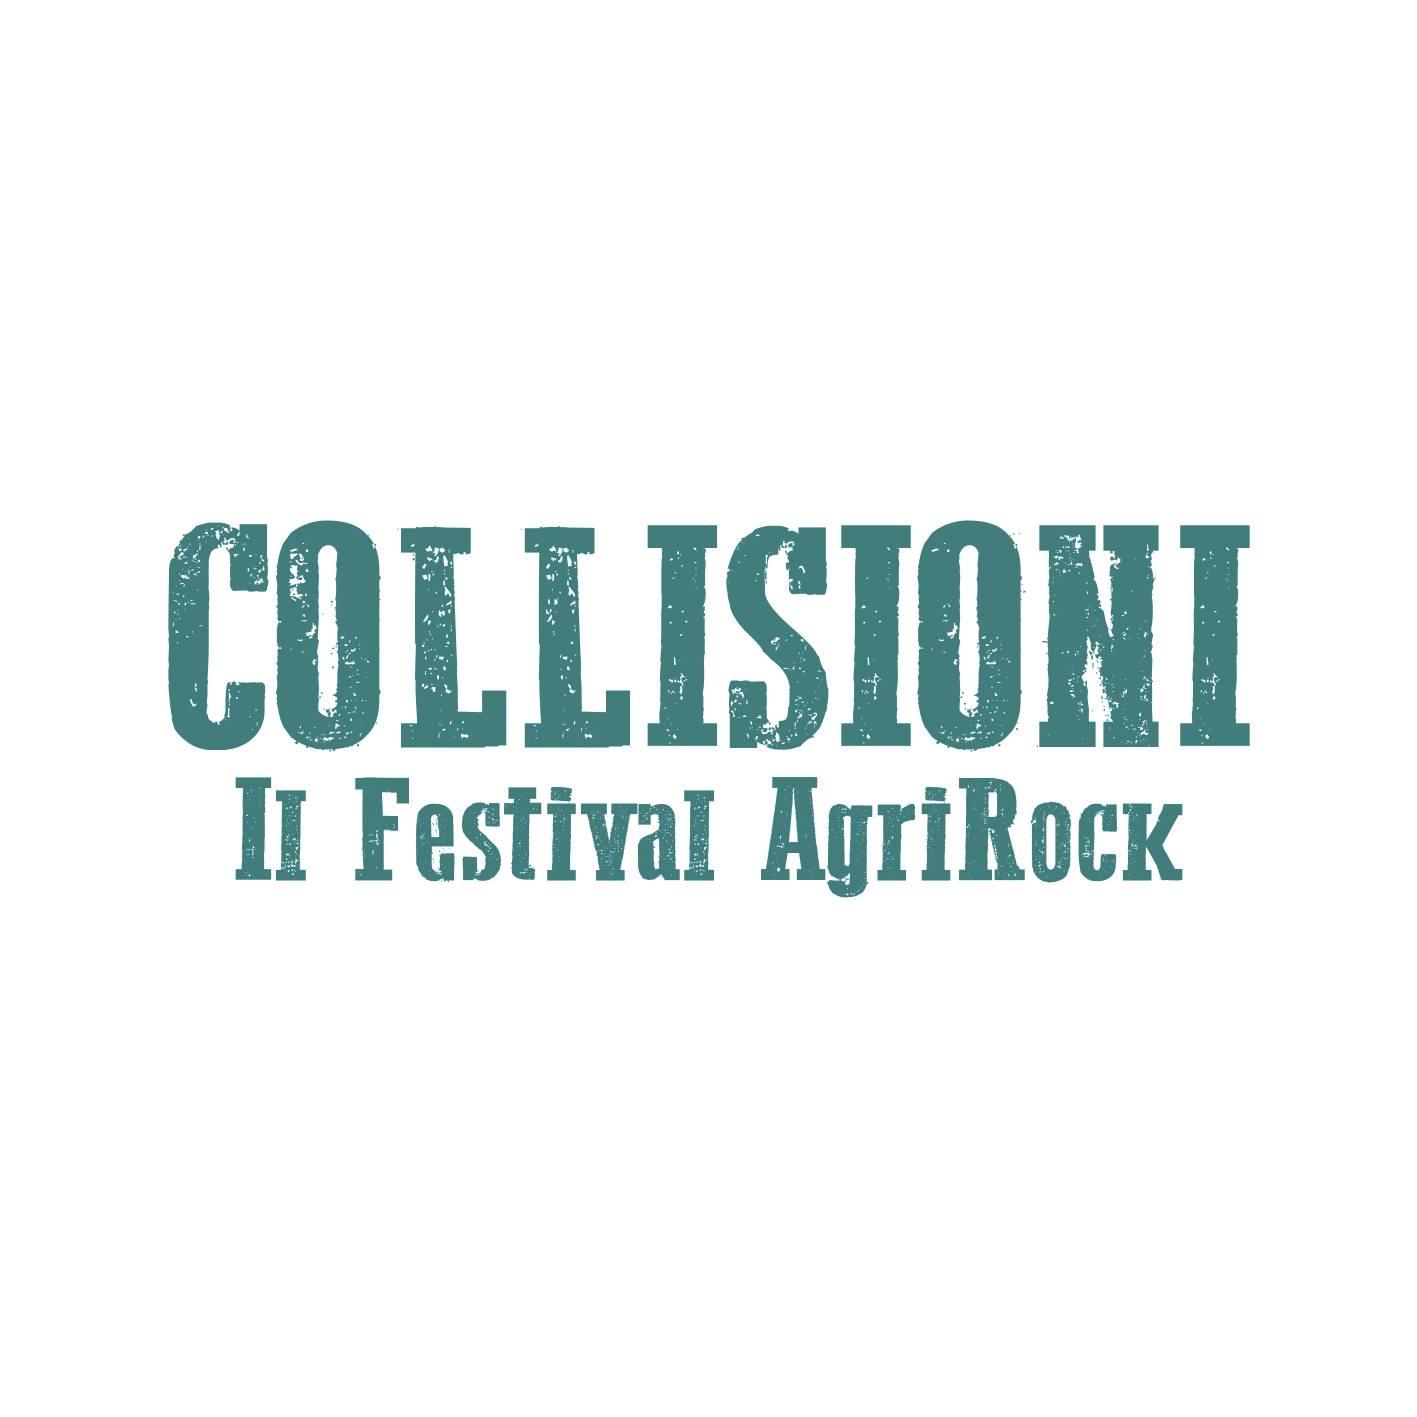 Collisioni Festival